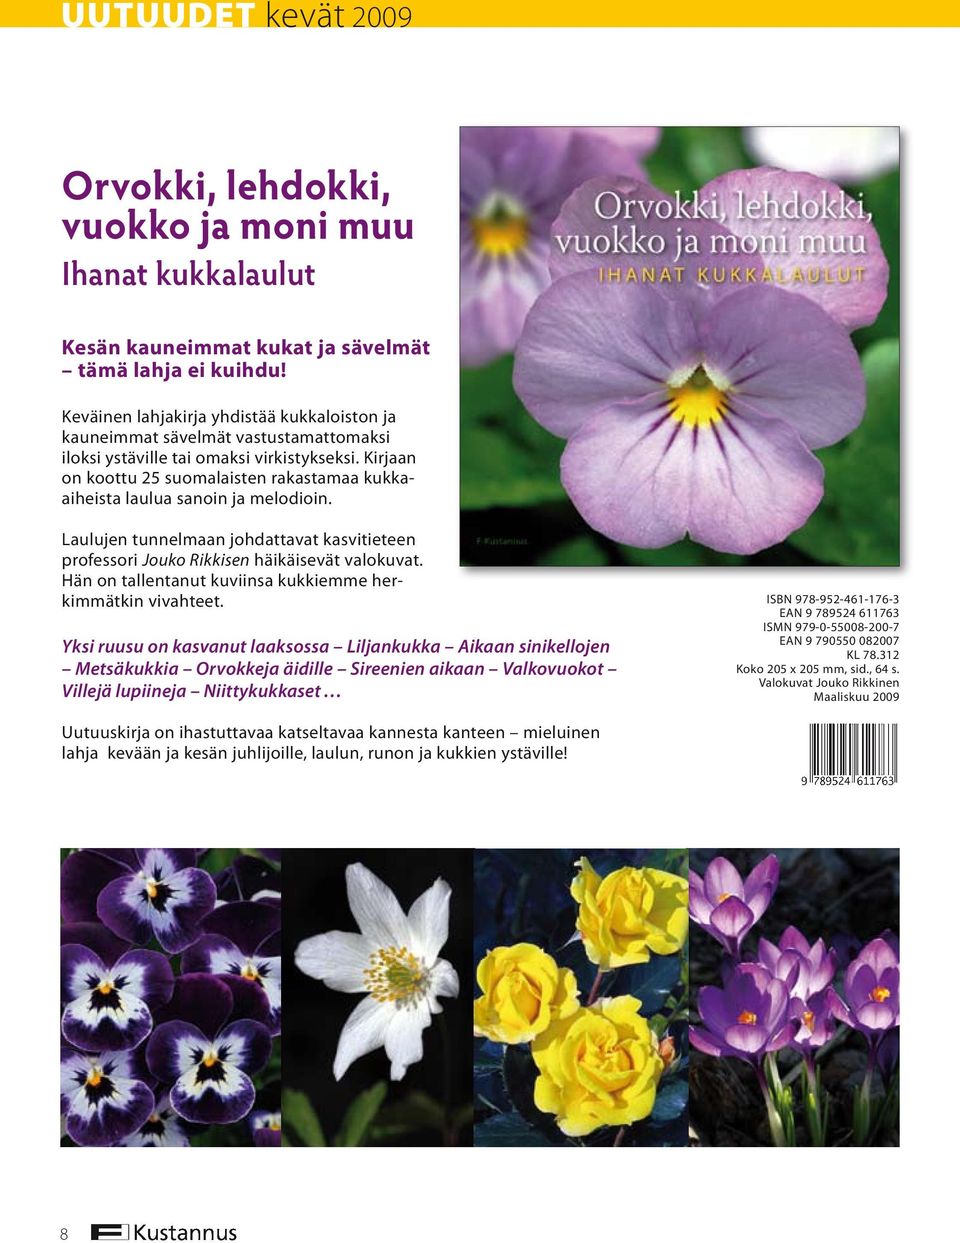 Kirjaan on koottu 25 suomalaisten rakastamaa kukkaaiheista laulua sanoin ja melodioin. Laulujen tunnelmaan johdattavat kasvitieteen profes sori Jouko Rikkisen häikäisevät valokuvat.